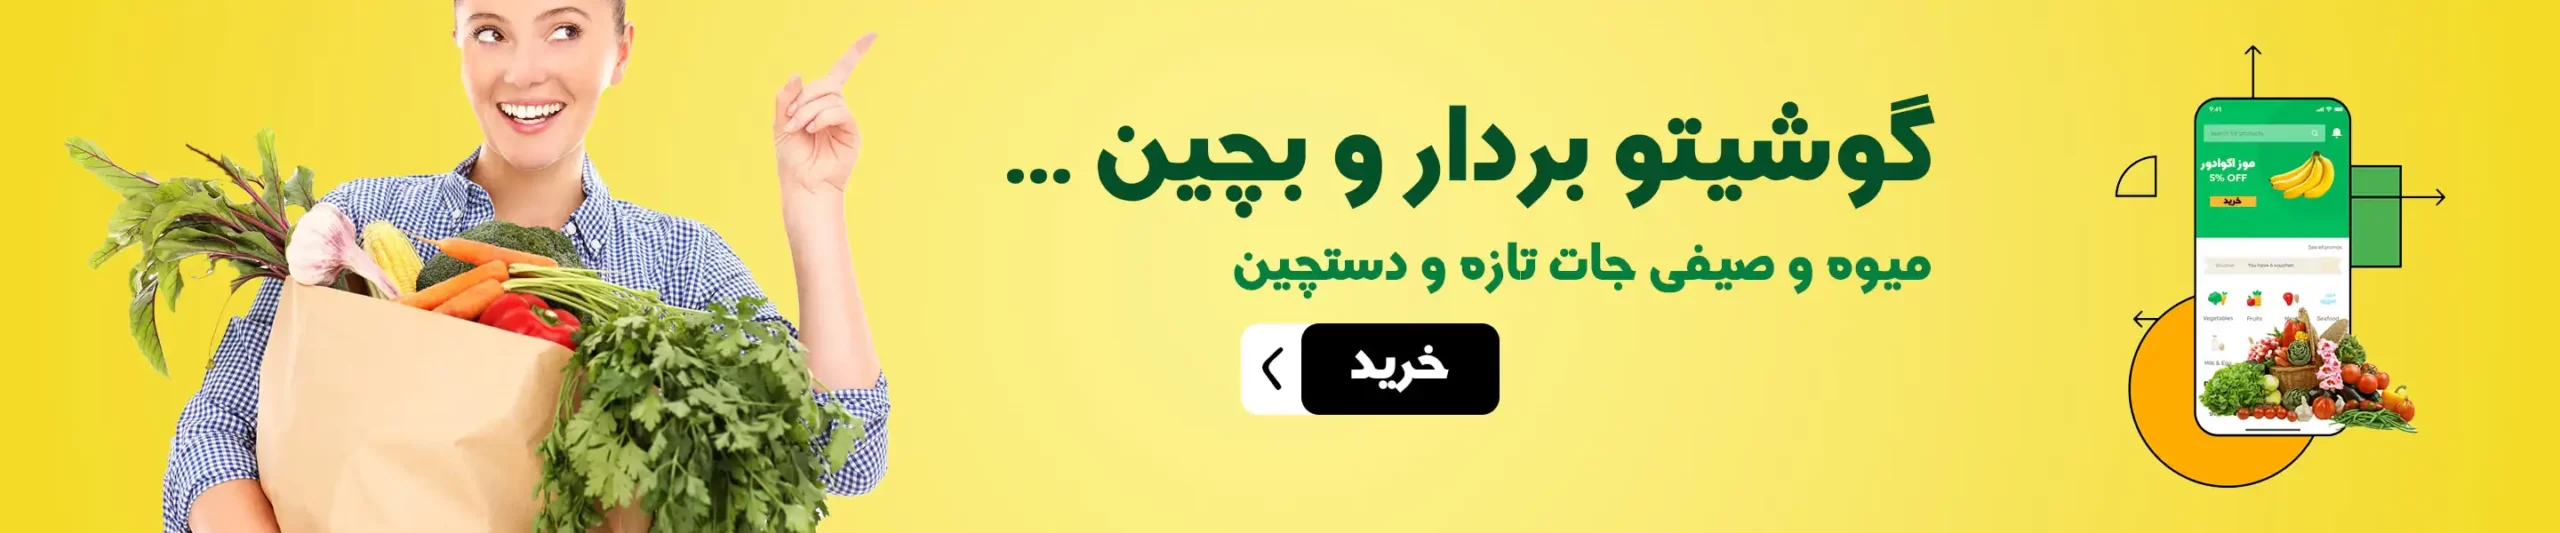 میوه و تره بار آنلاین زنجان